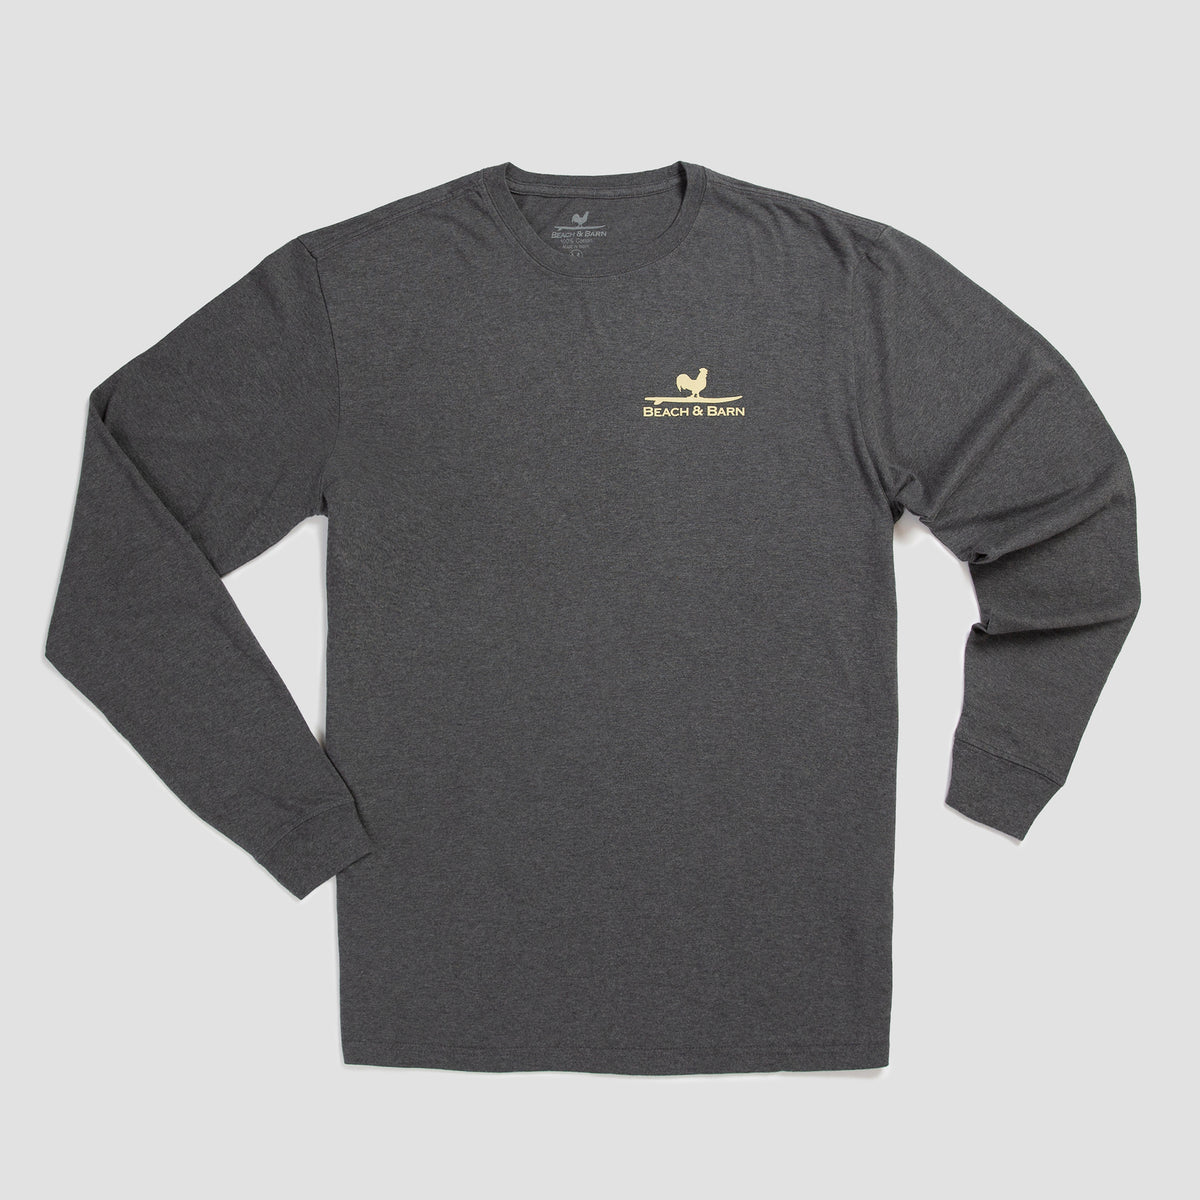 Sale - Shoulder Season Long Sleeve Tee Shirt